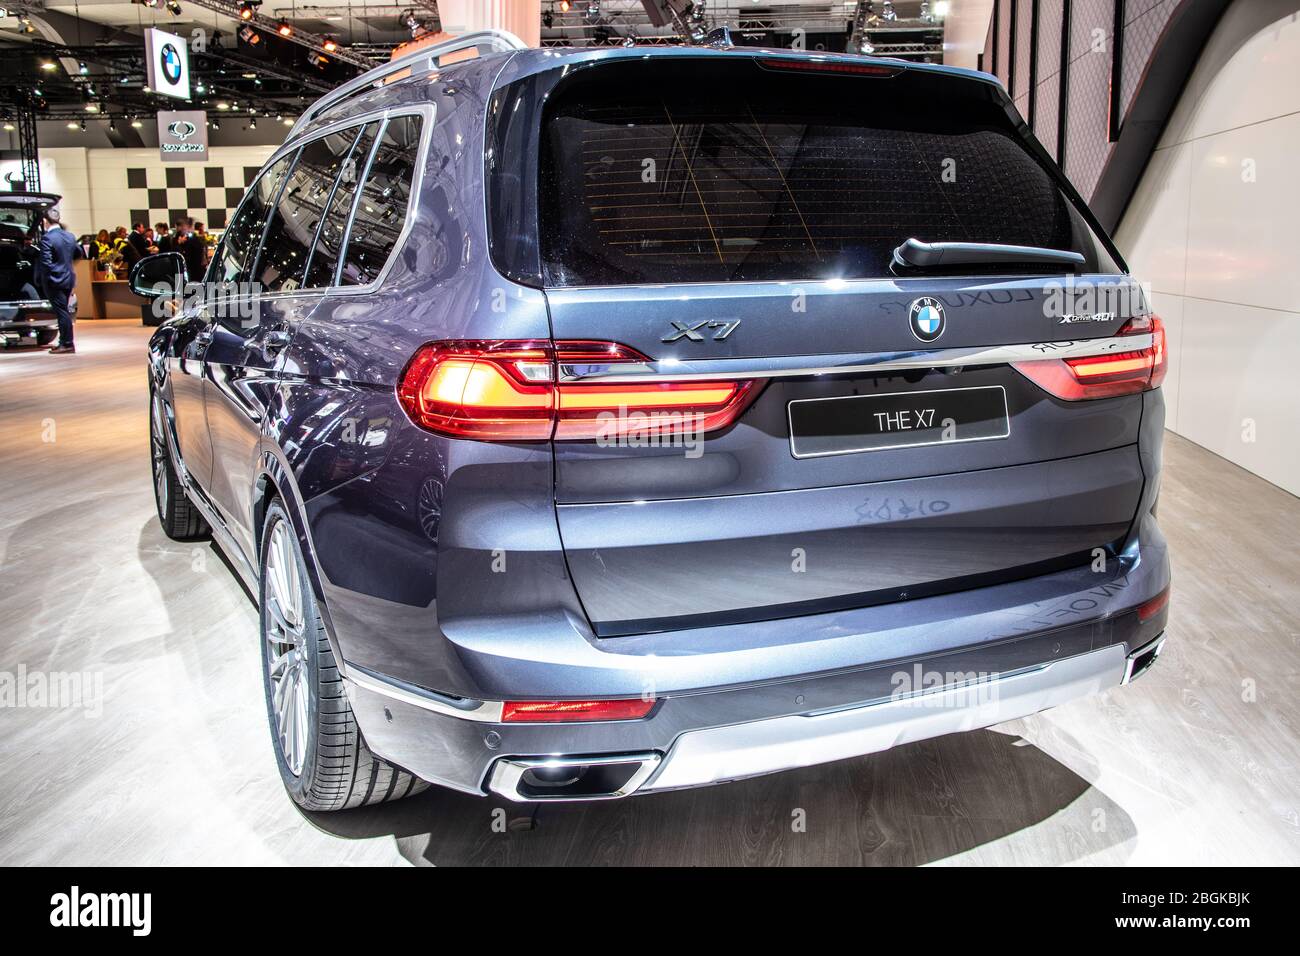 Bruxelles, Belgio, 09 gennaio 2020: Nuova BMW X7 prodotta al Salone di Bruxelles, SUV G07 anno modello 2020 prodotto e commercializzato dalla BMW Foto Stock